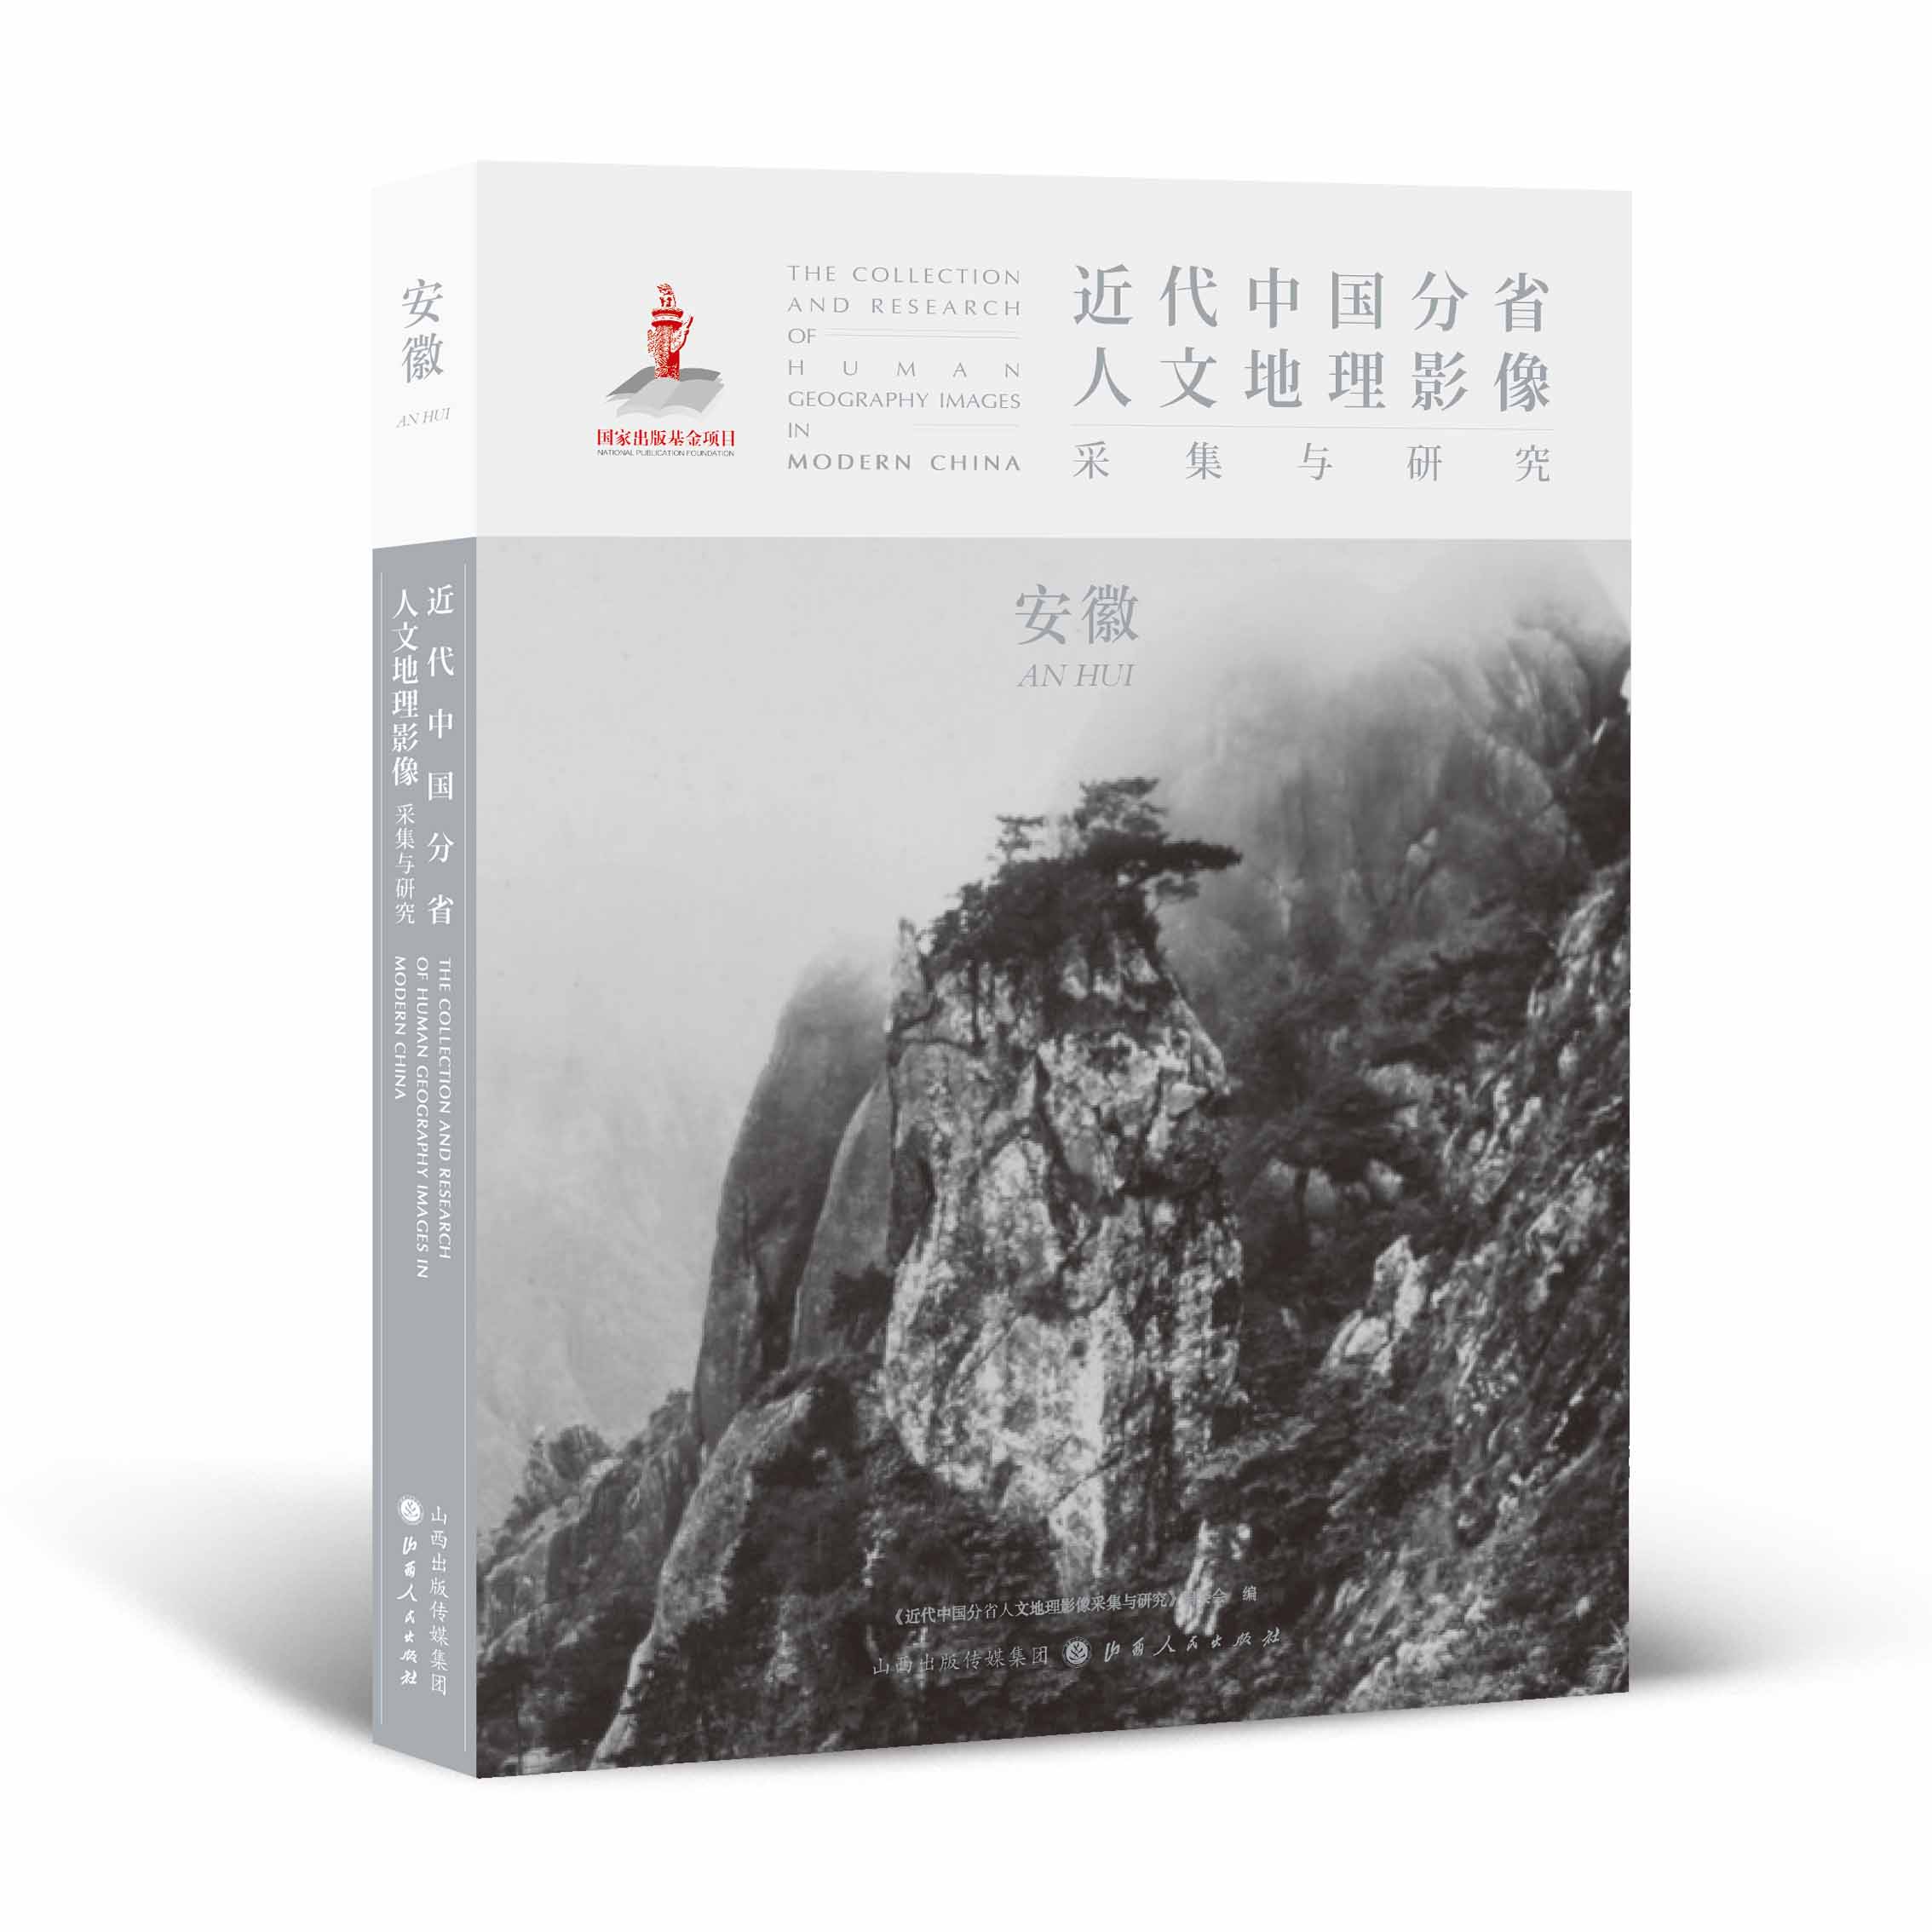 正版包邮 近代中国分省人文地理影像采集与研究 安徽 国家出版基金项目 全球采集 用图像读懂中国近代史 近代中国的影像读本